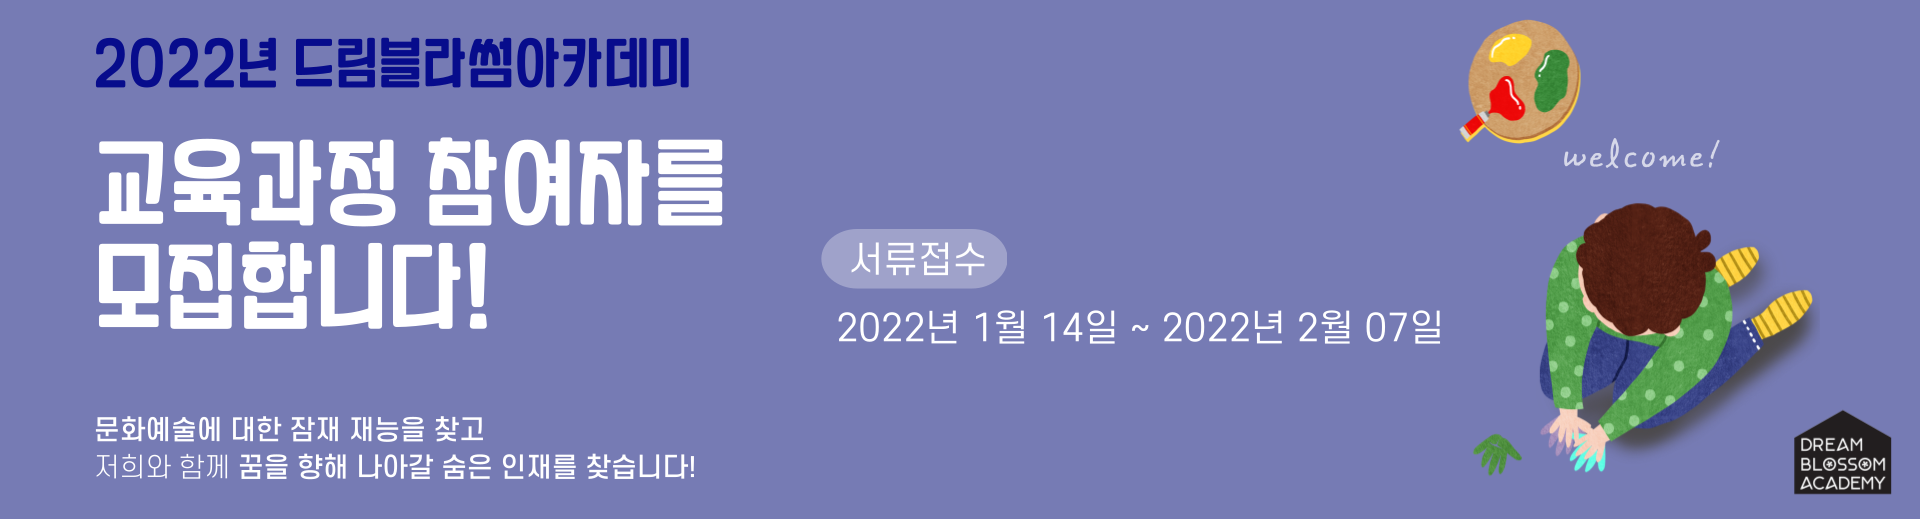 2022년 드림블라썸아카데미 참가자 모집